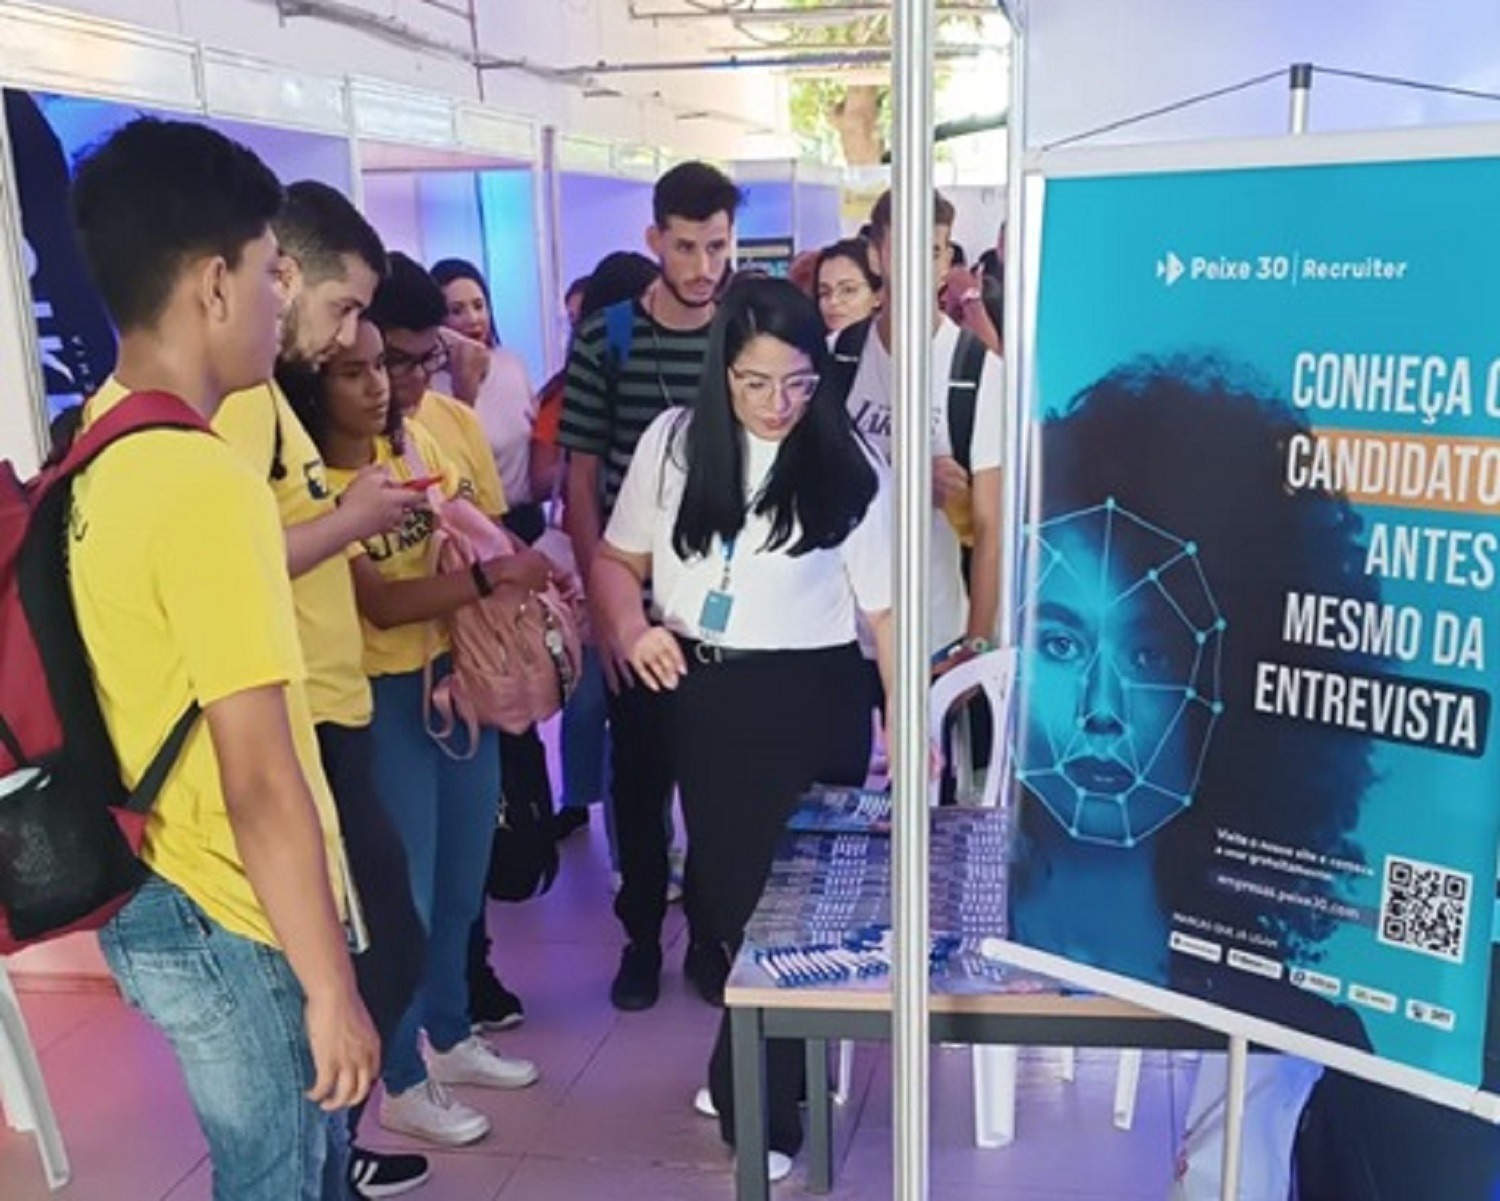 Feira de Oportunidades - Evento Gratuito Oferece Mais de 1.000 Vagas de Emprego e Estágio no Recife